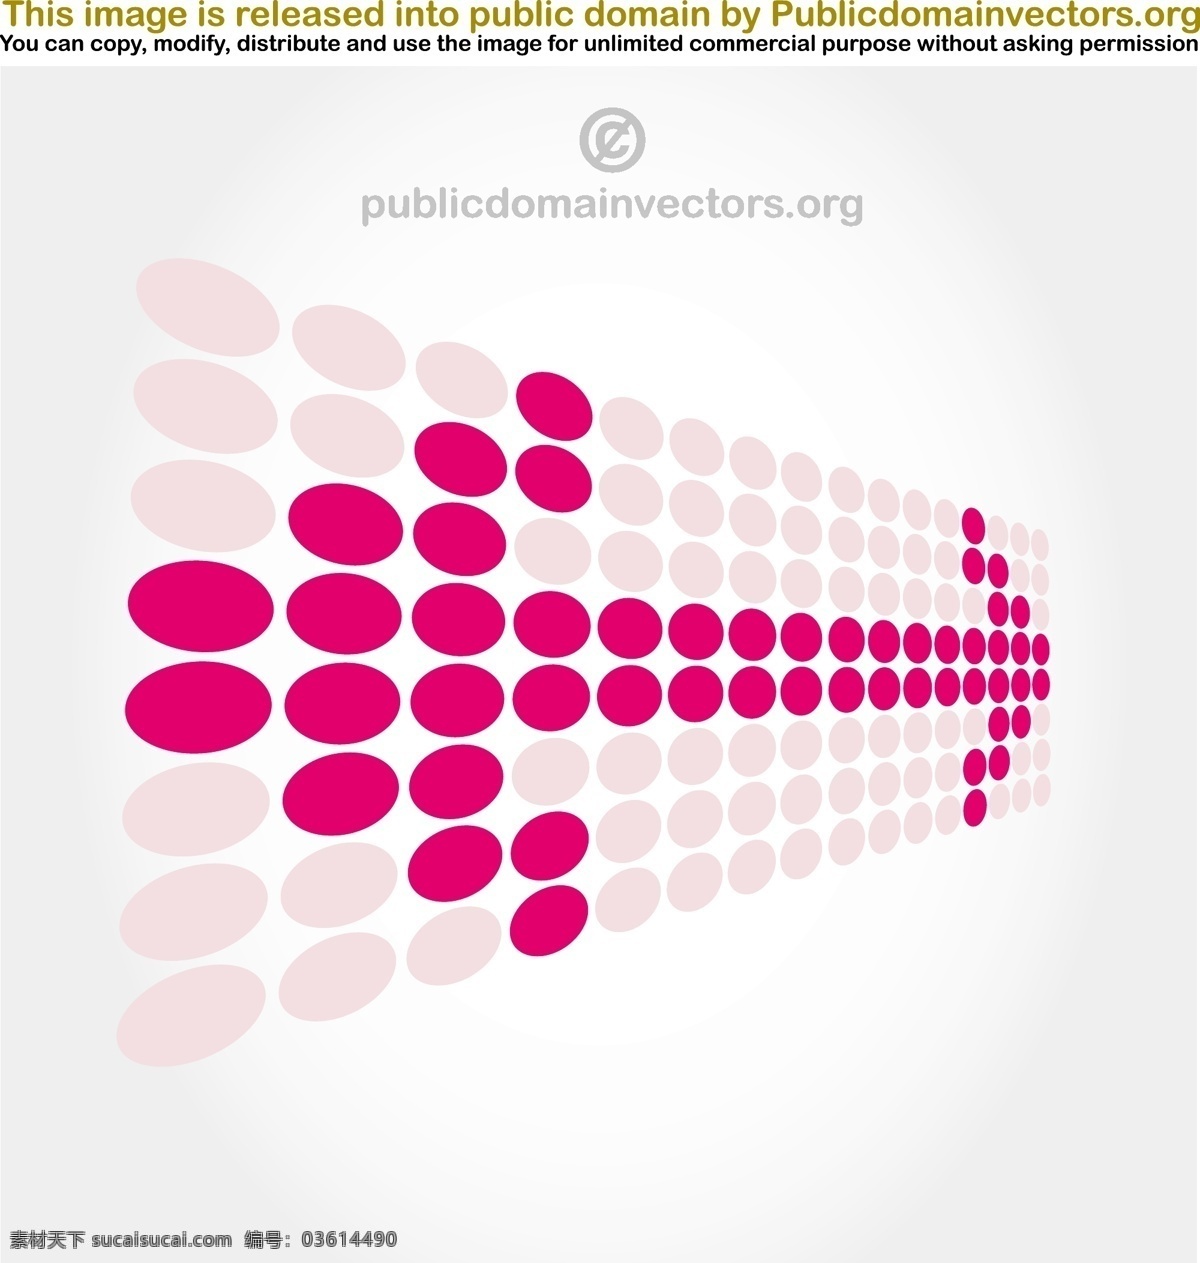 粉红色 矢量 图形 标识 标志 方向 粉红色的 符号 箭头 圆 点 抽象的 其他矢量图